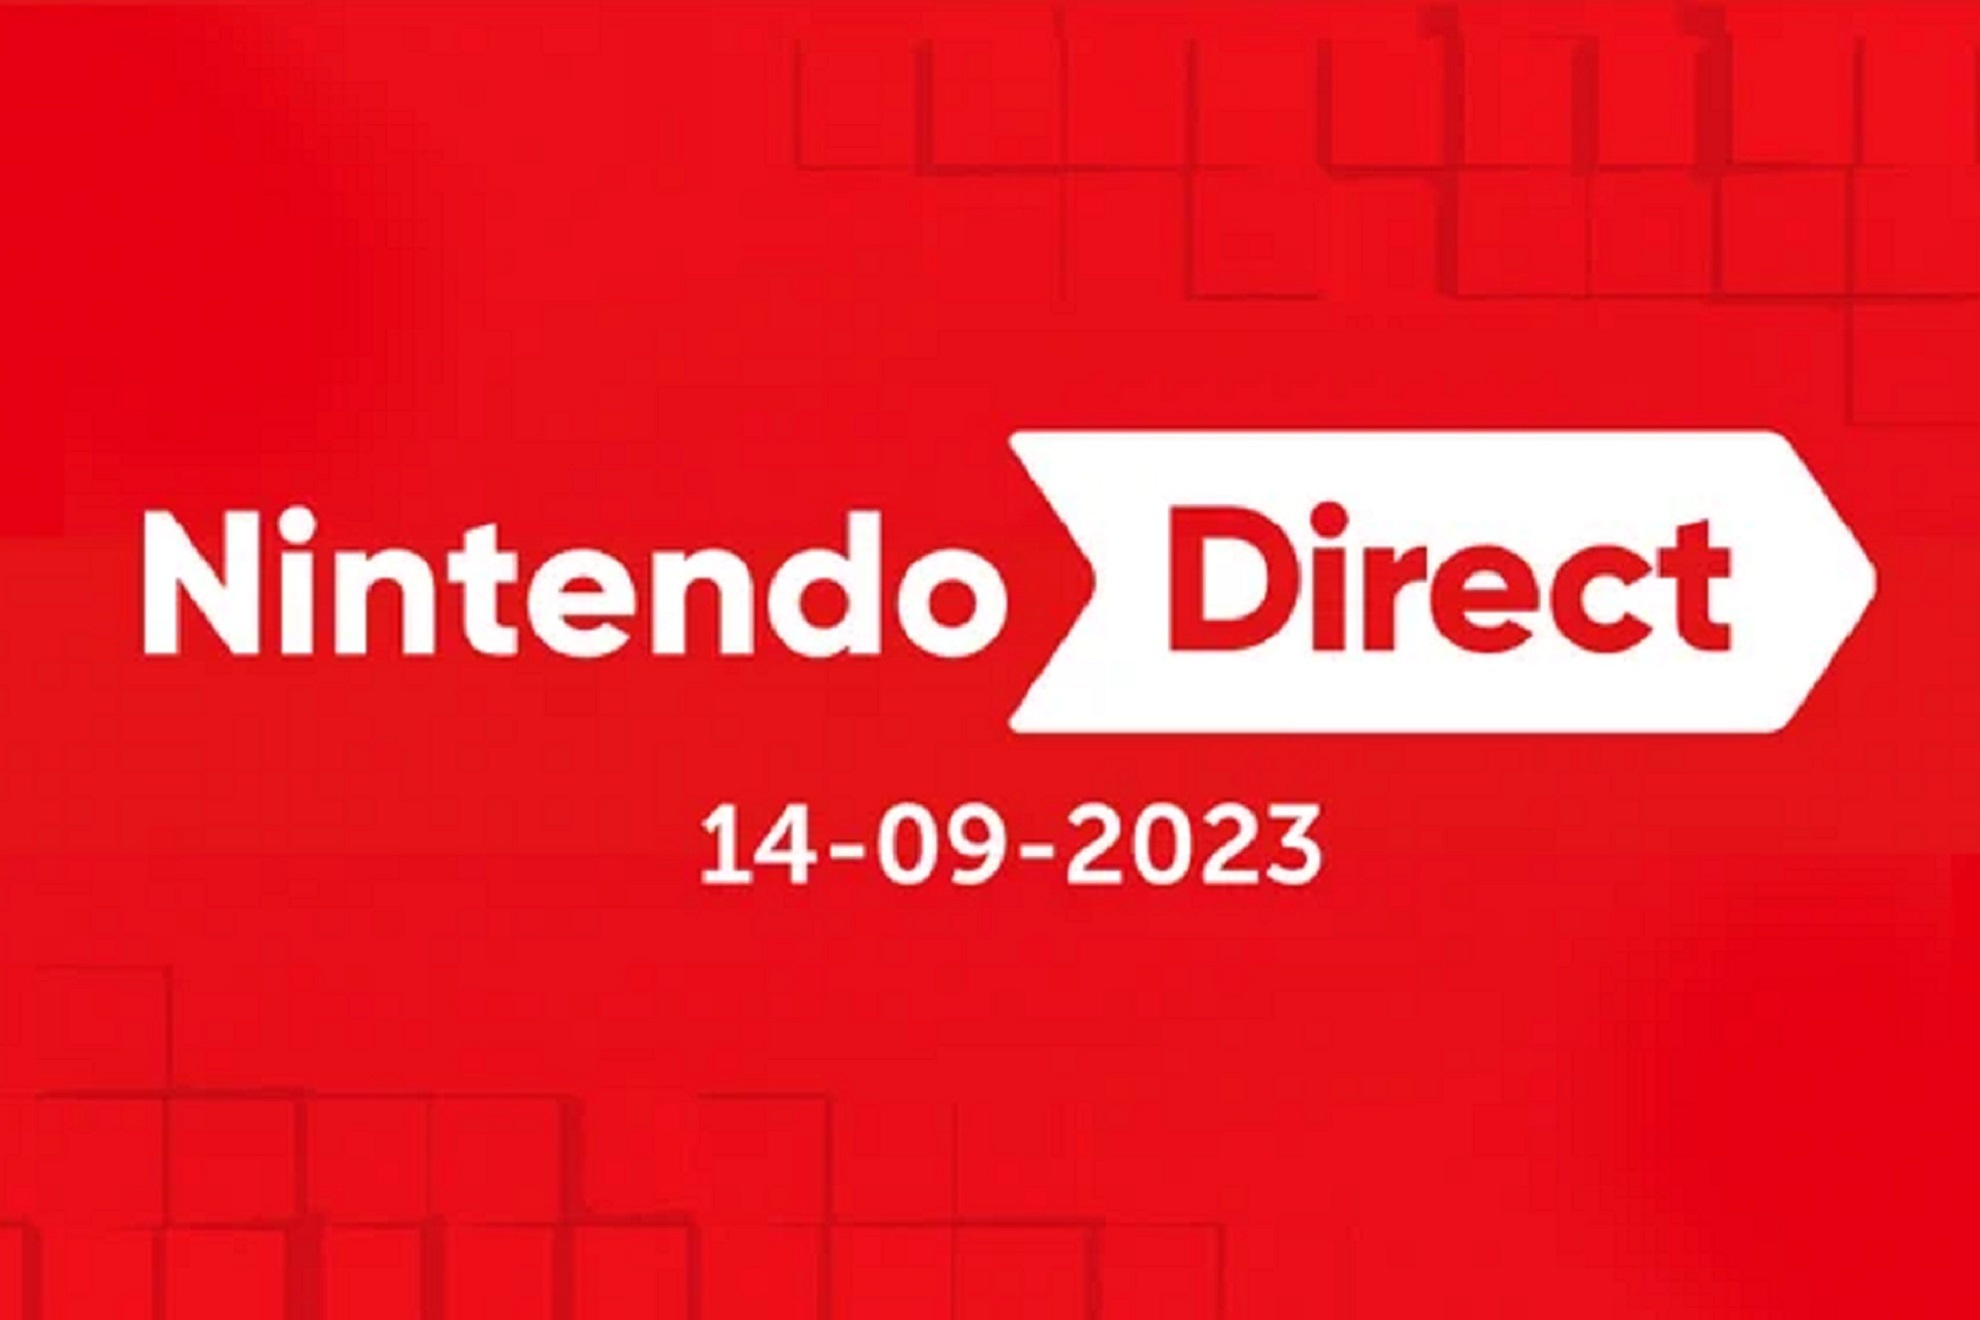 Nintendo Direct de septiembre, hoy: horario, duración y dónde ver online en directo los nuevos juegos de Switch